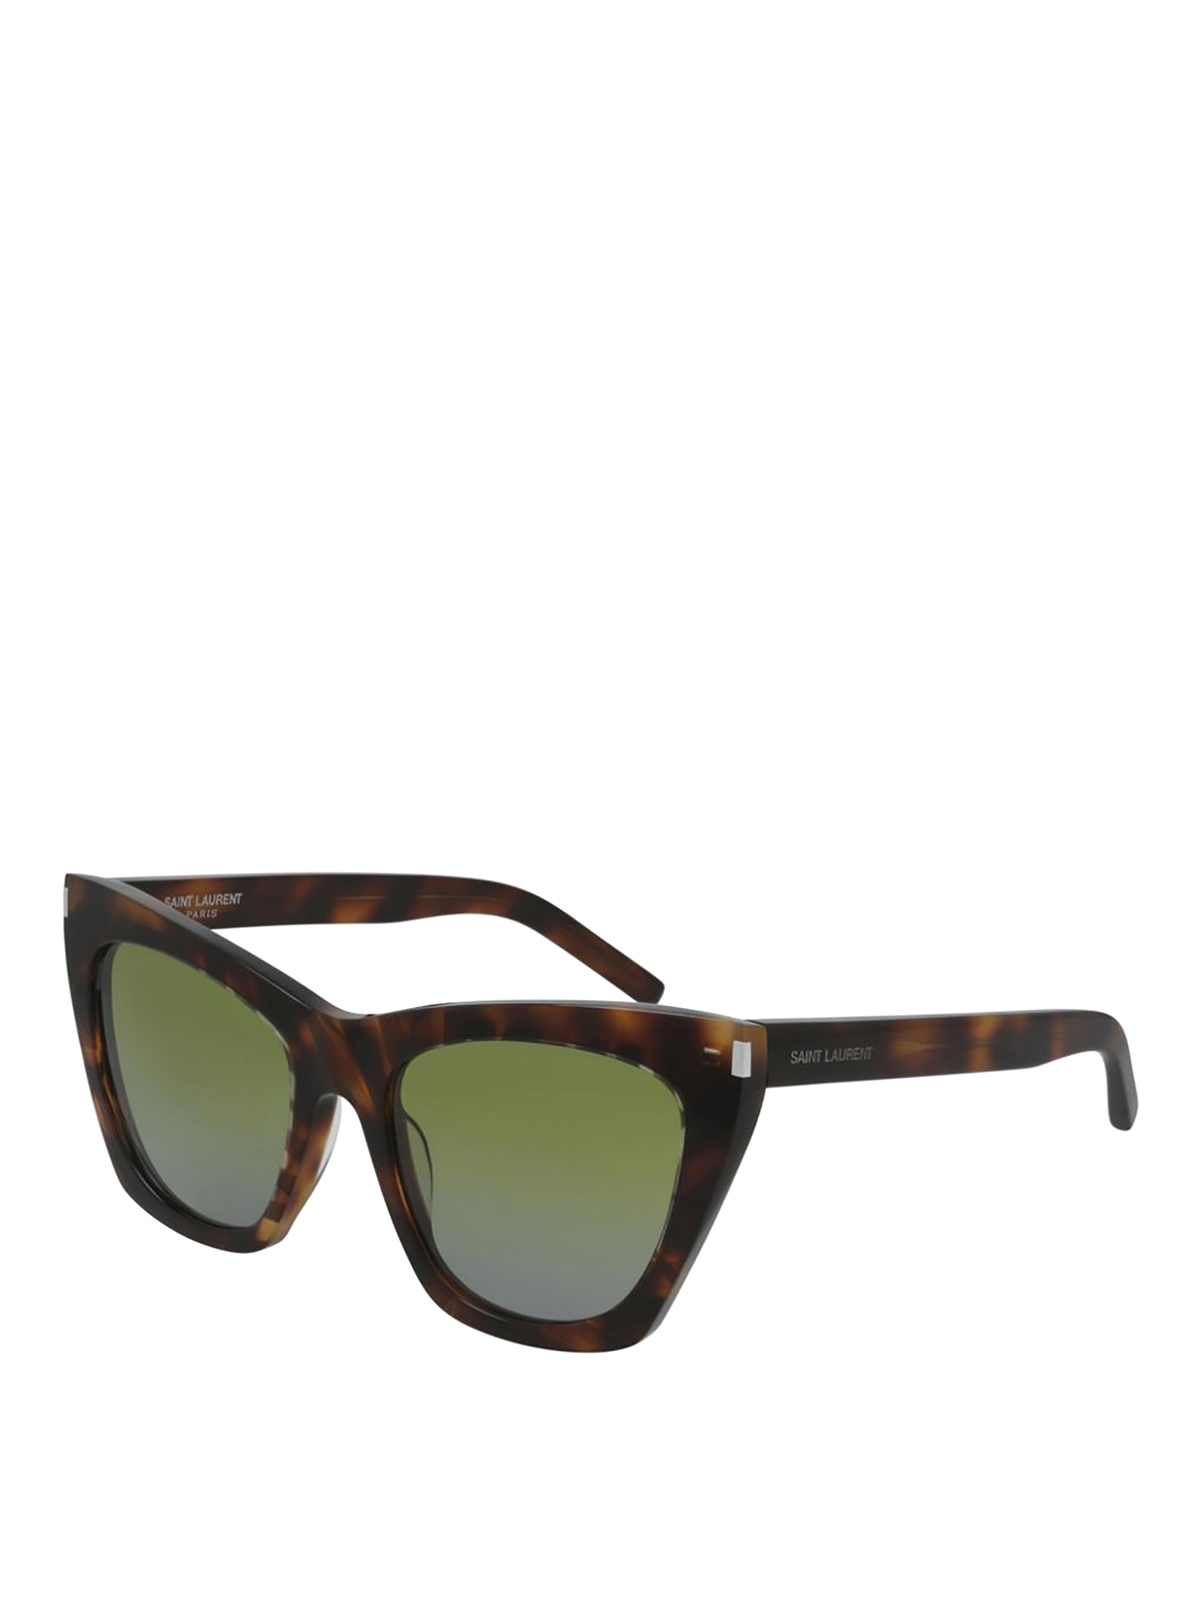 Saint Laurent 214 Kate Sunglasses In Brown